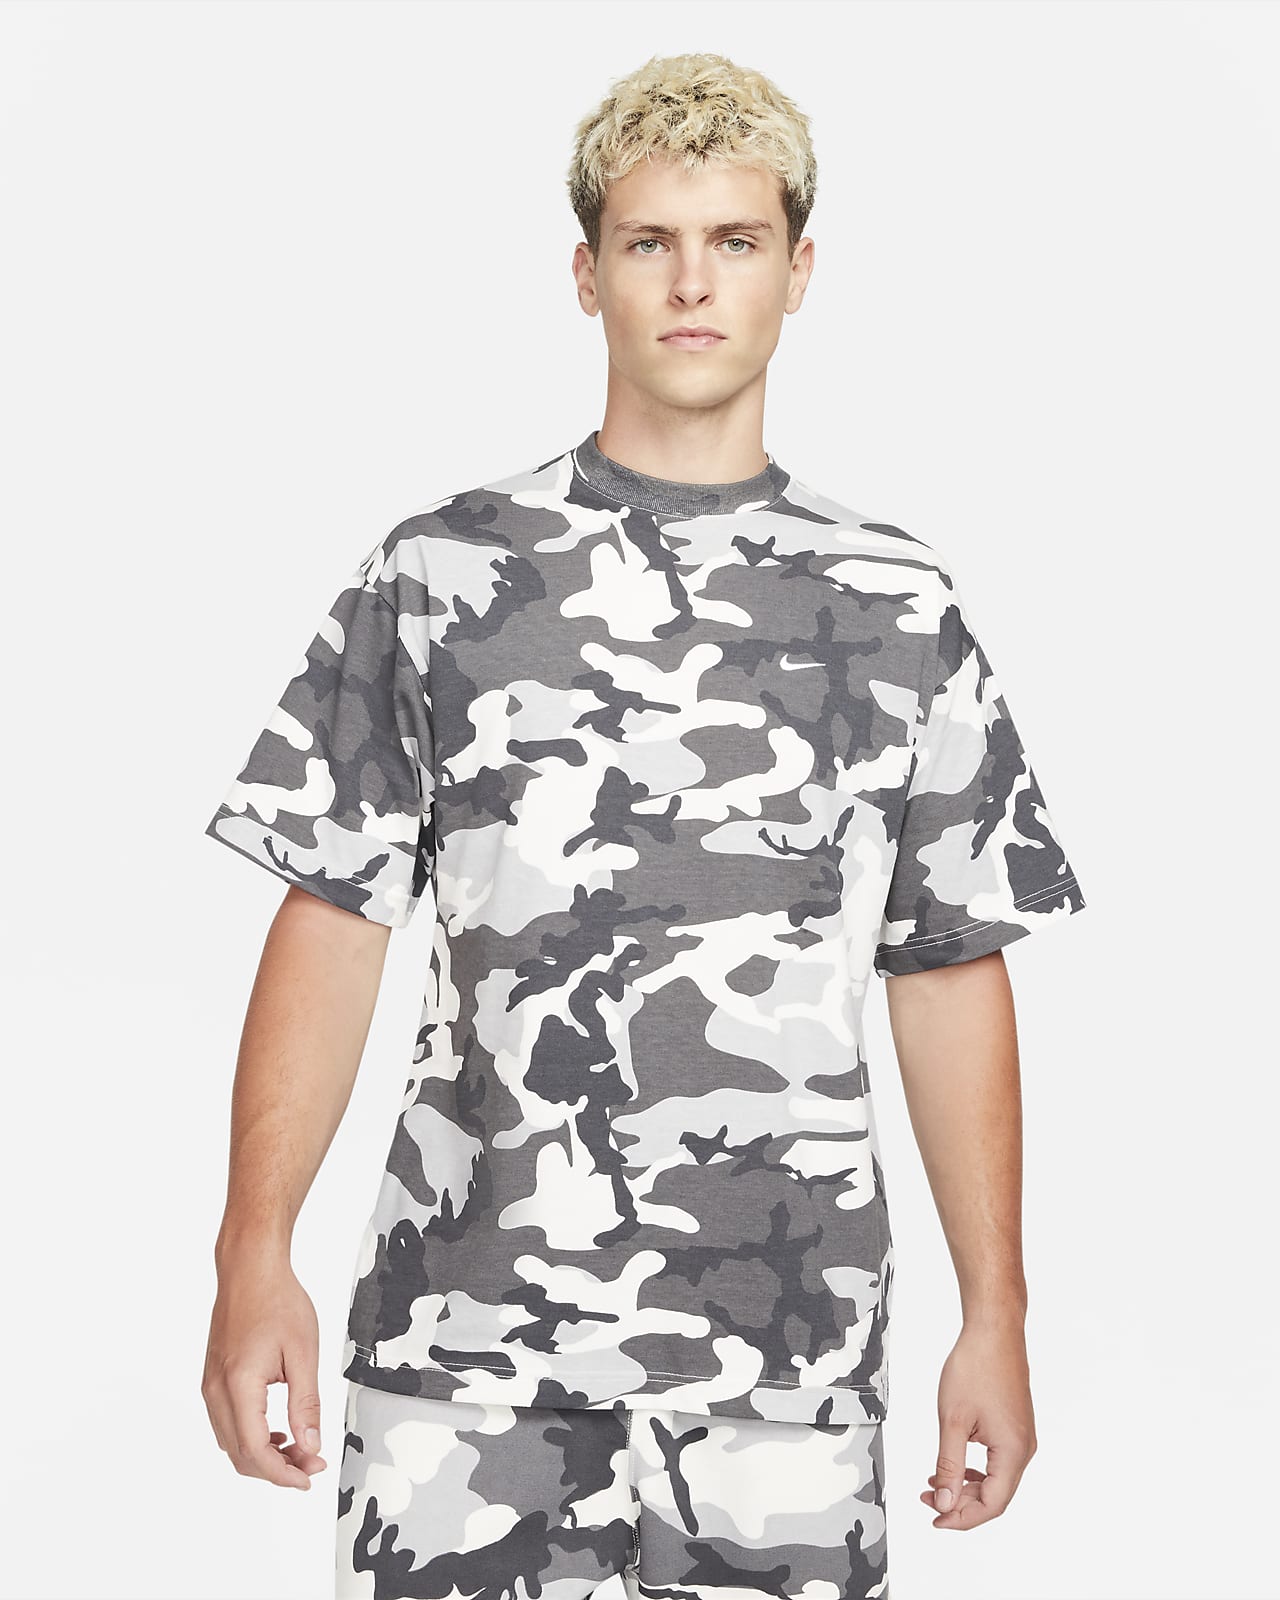 Nike Solo Swoosh Men's Camo T-Shirt